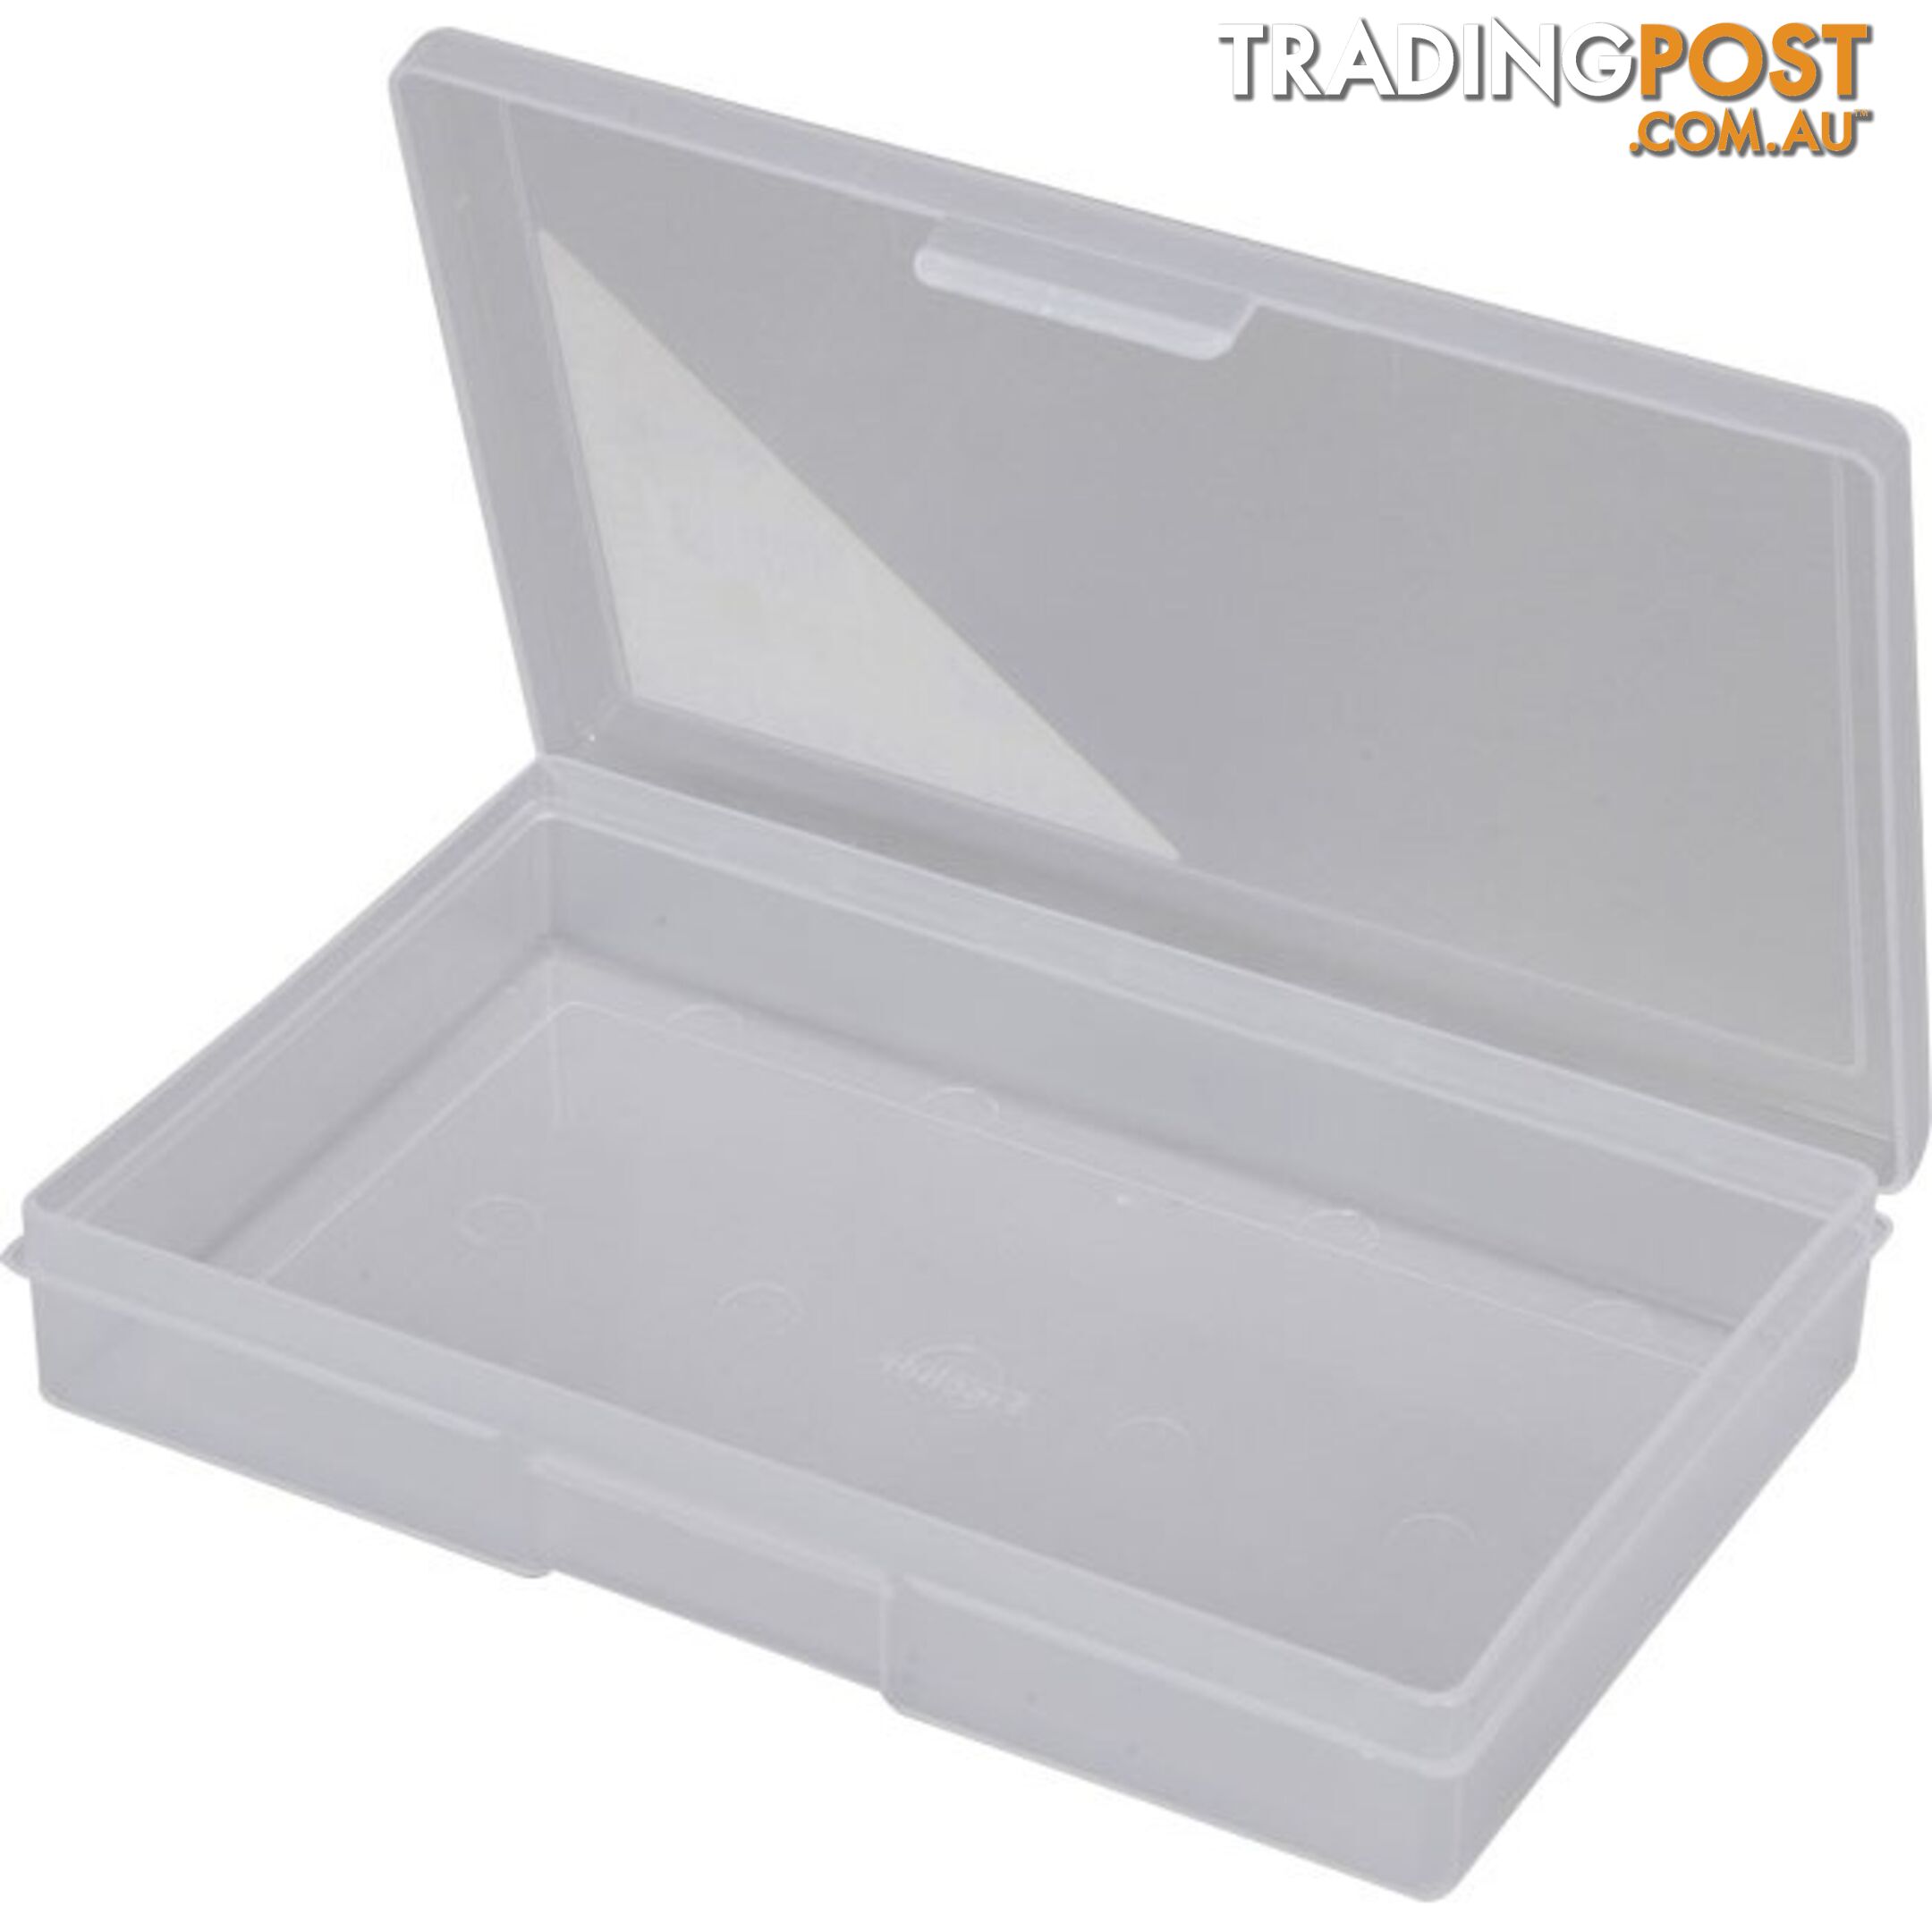 1H031 1 COMPARTMENT STORAGE BOX SMALL PLASTIC CASE